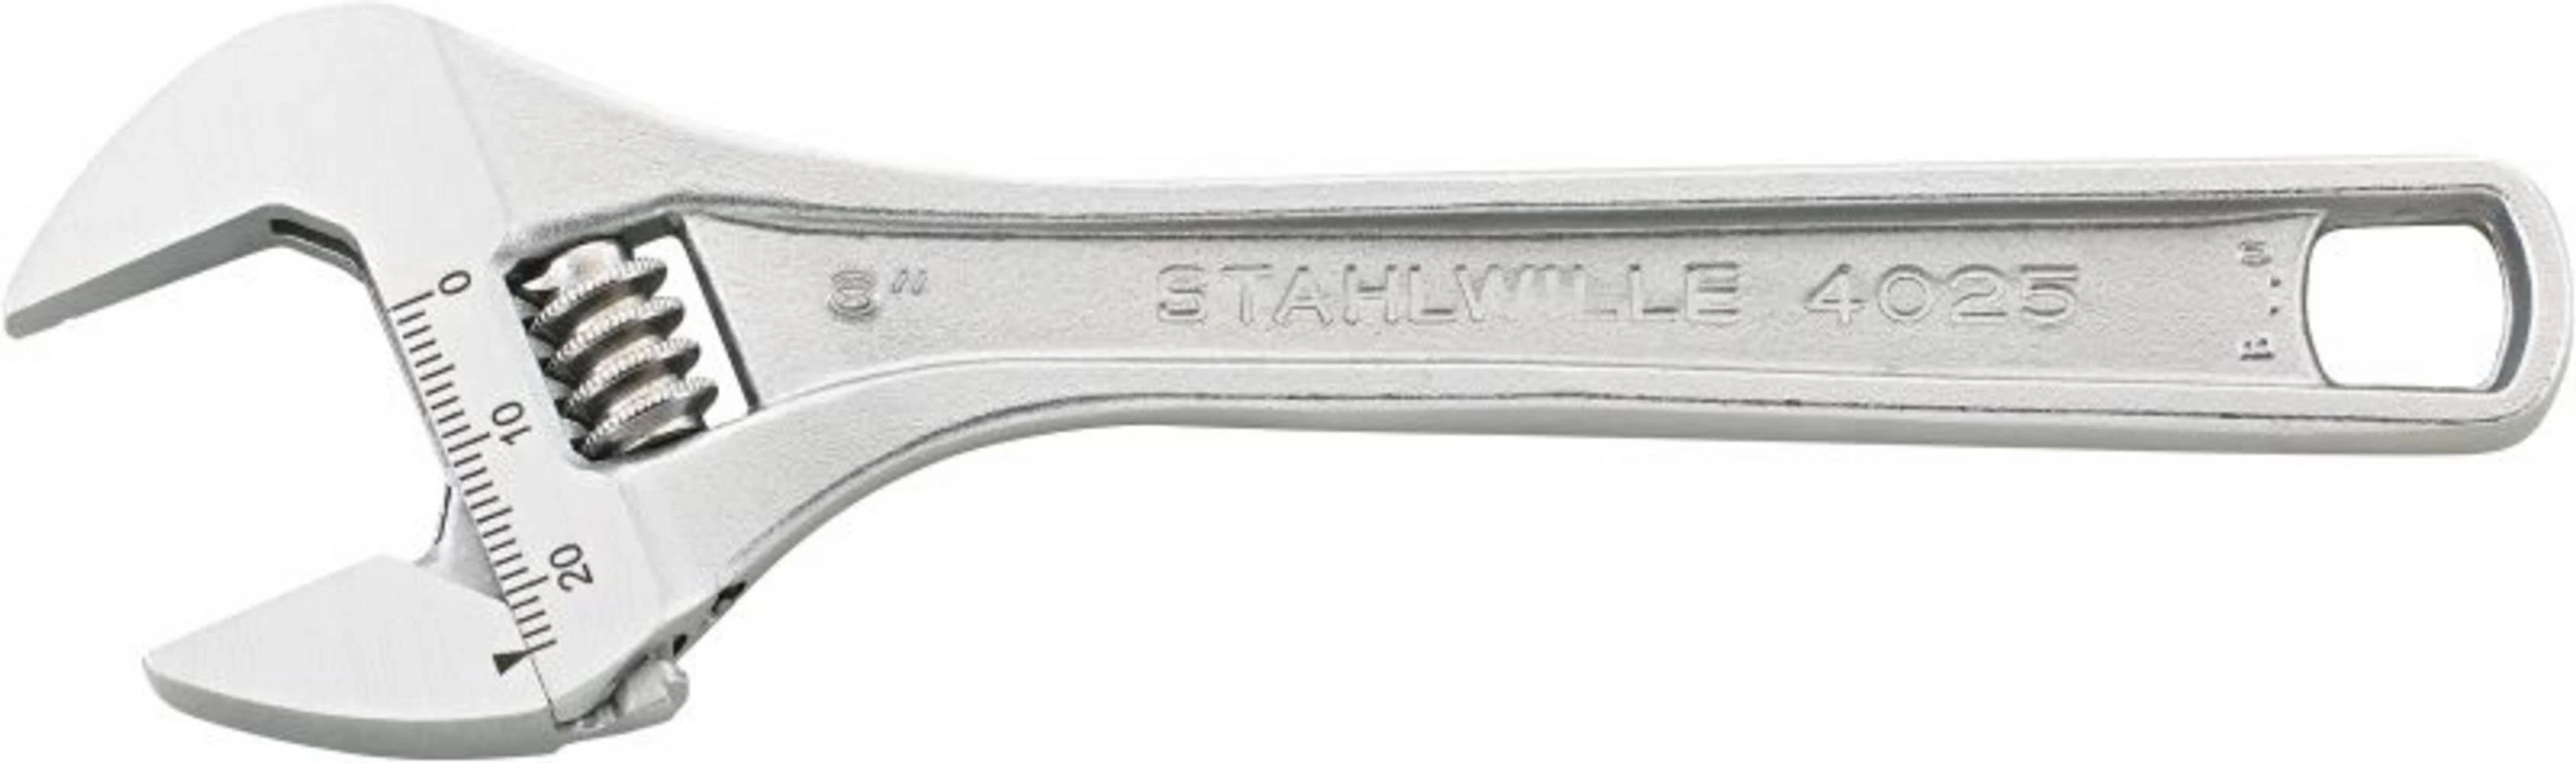 Schraubenschlüssel, Silber 40250110 STAHLWILLE